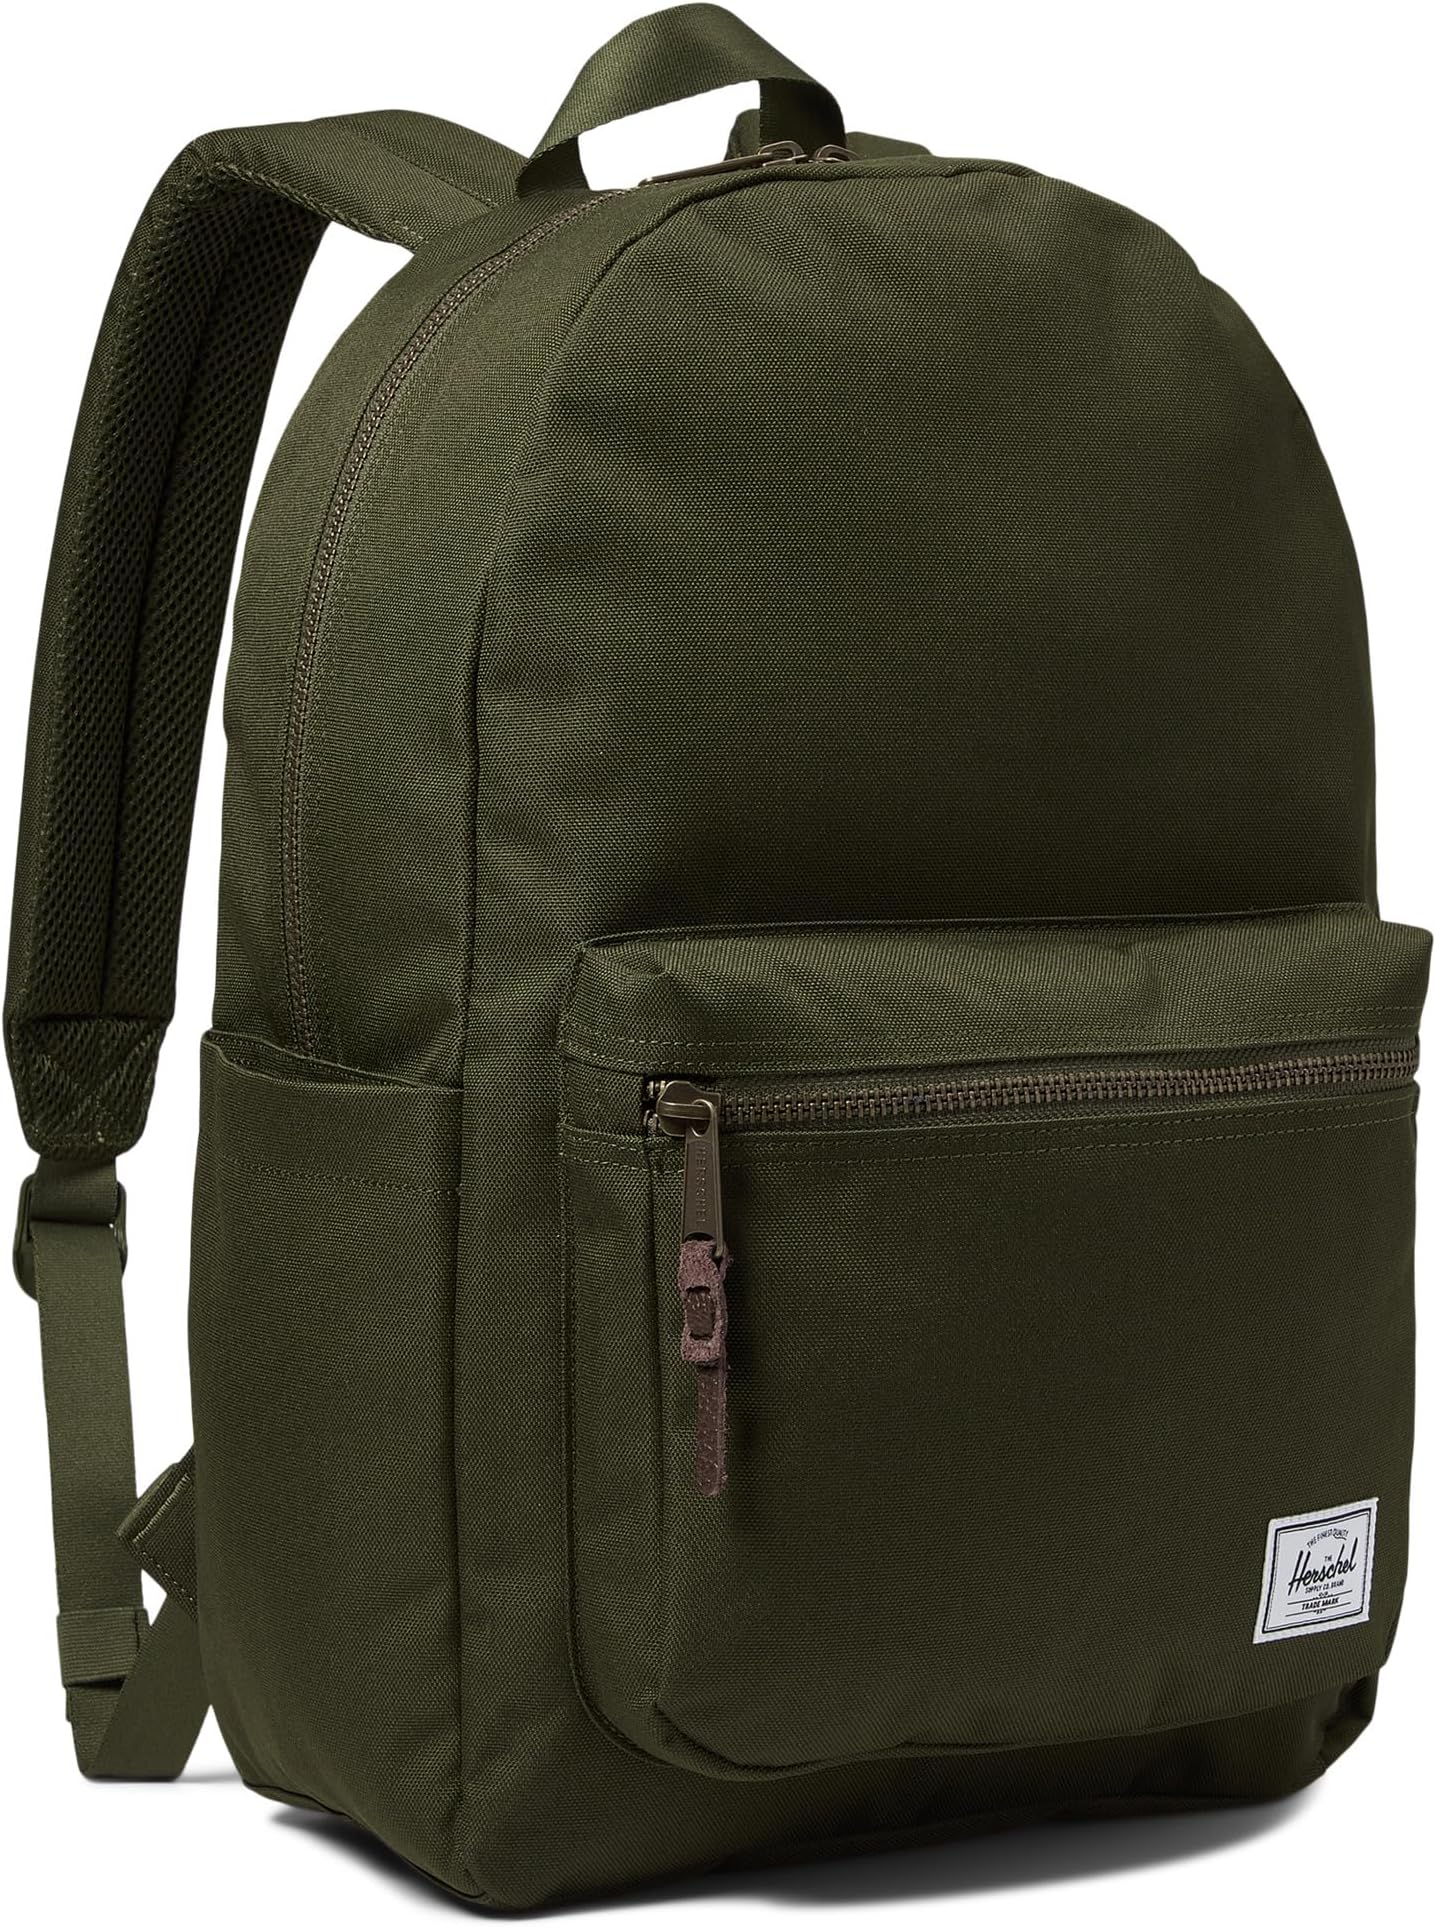 рюкзак retreat backpack herschel supply co цвет ivy green Рюкзак Settlement Backpack Herschel Supply Co., цвет Ivy Green